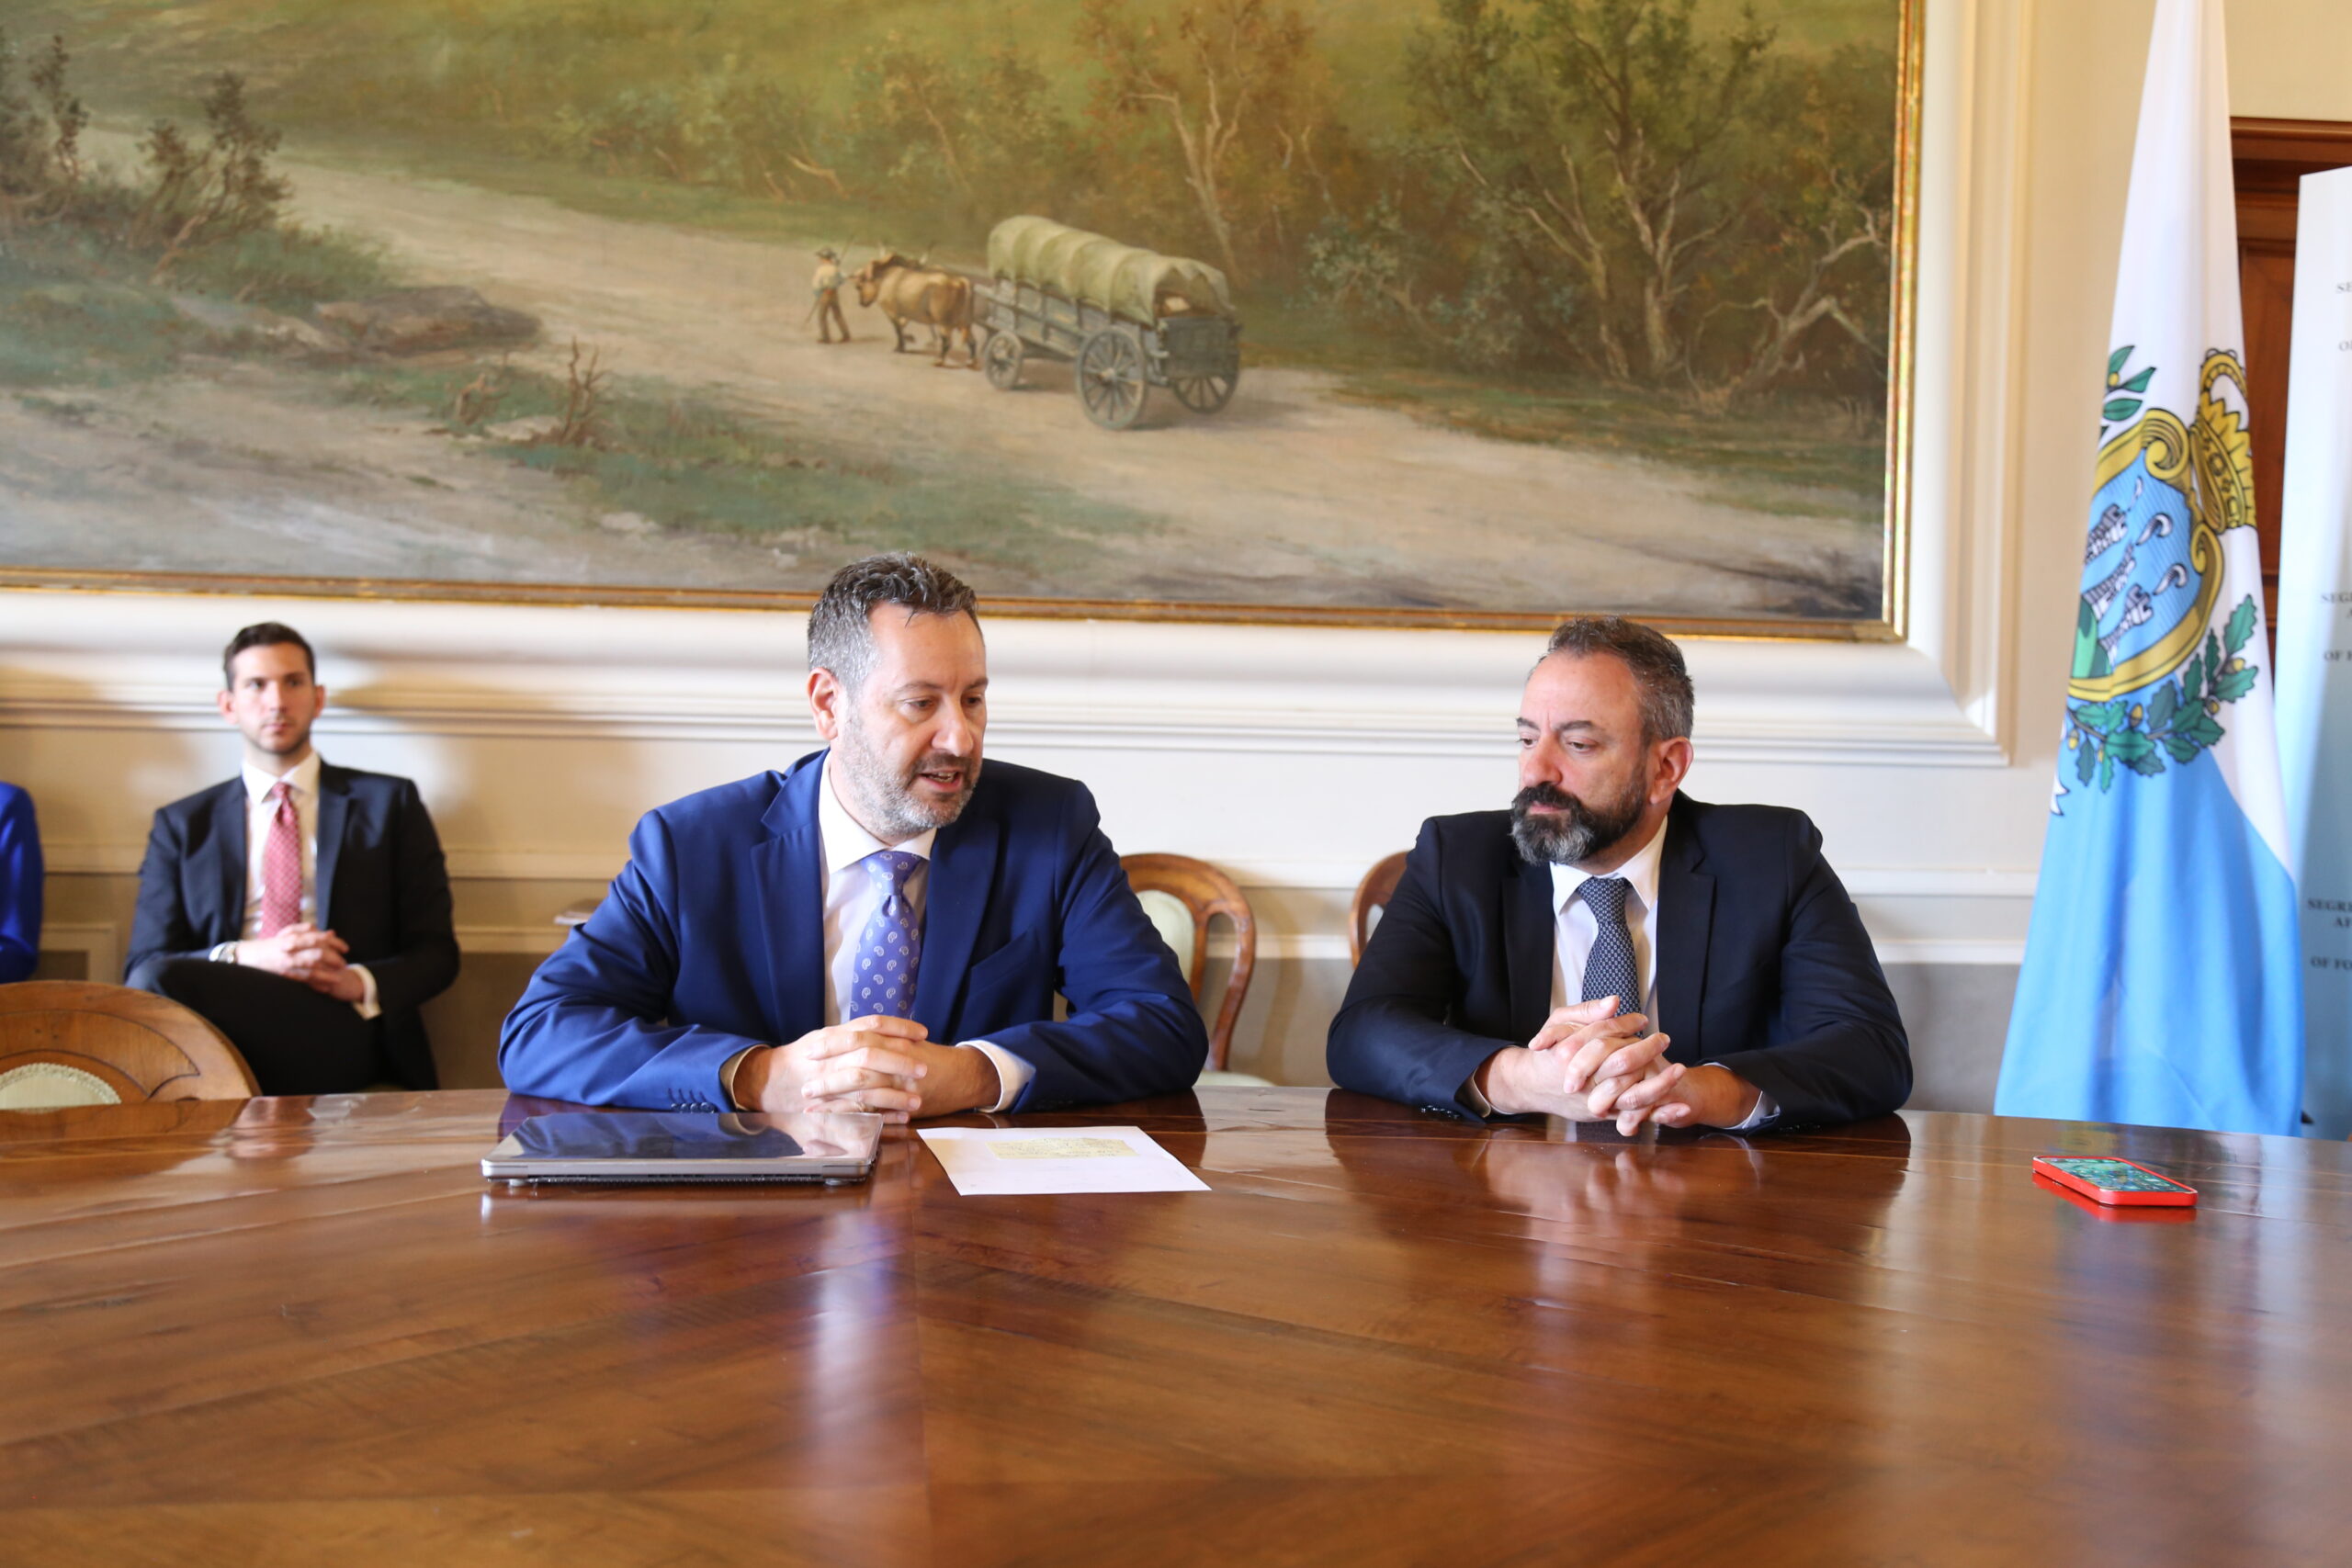 Rinnovato il debito pubblico di San Marino, soddisfatto il governo: “Ottima operazione. Confermata la fiducia nel nostro paese”